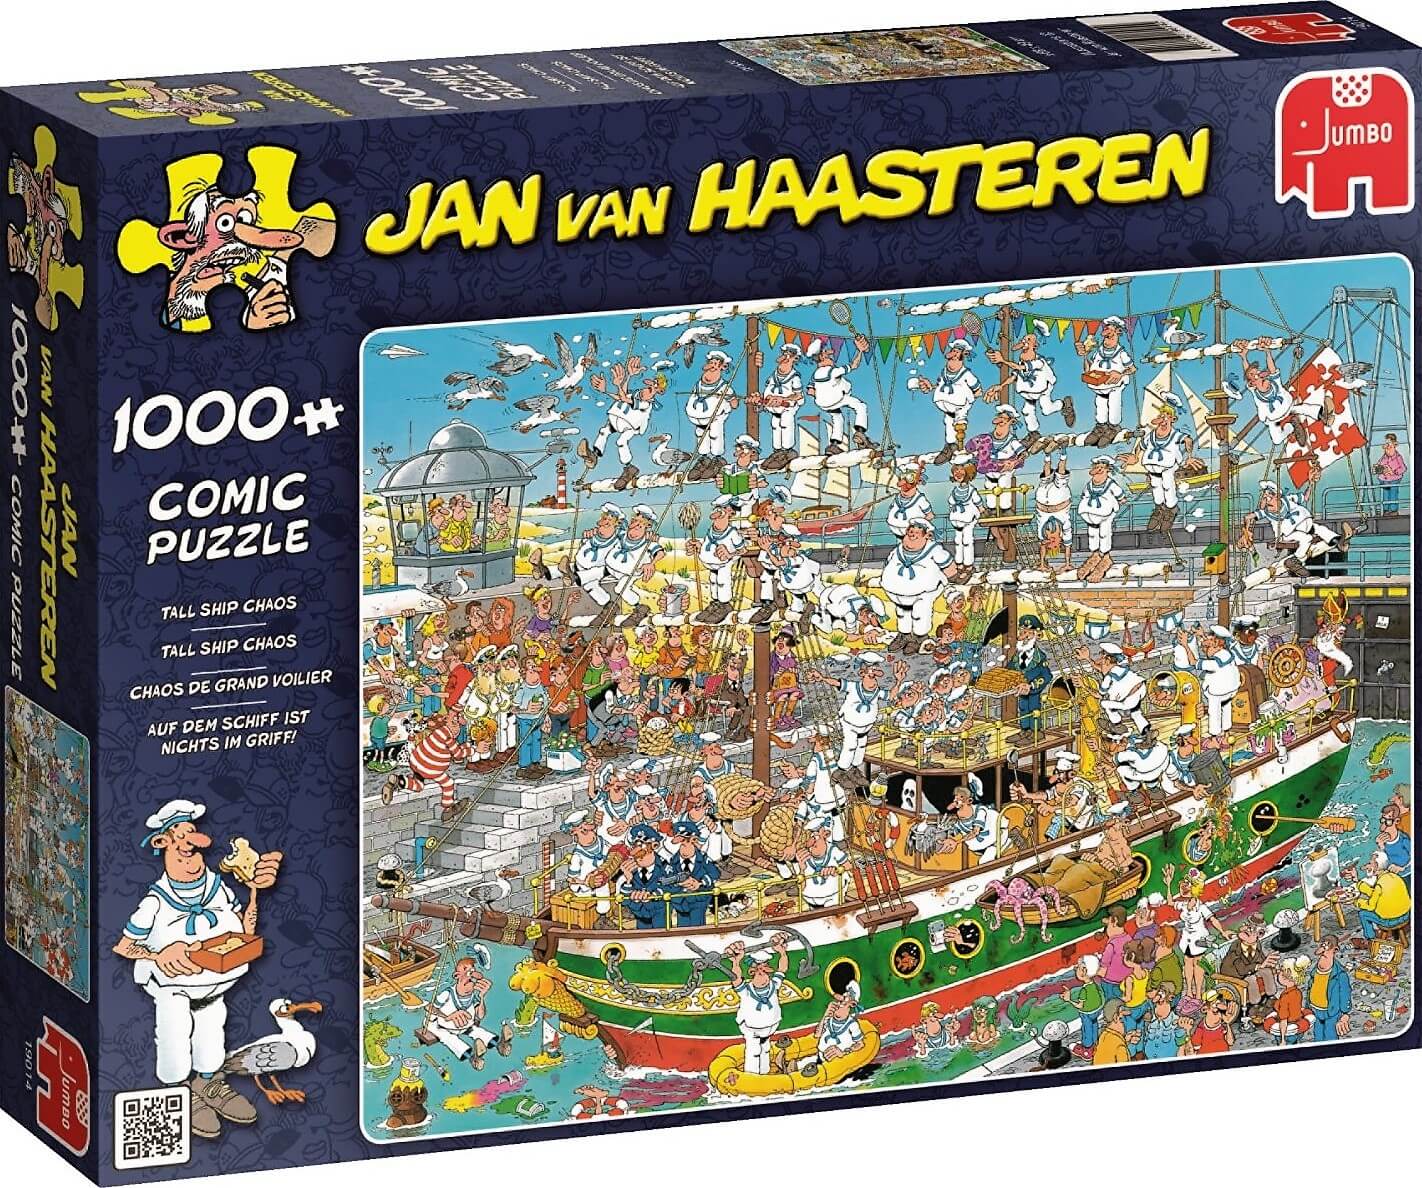 1000 Caos en el barco, Jan van Haasteren